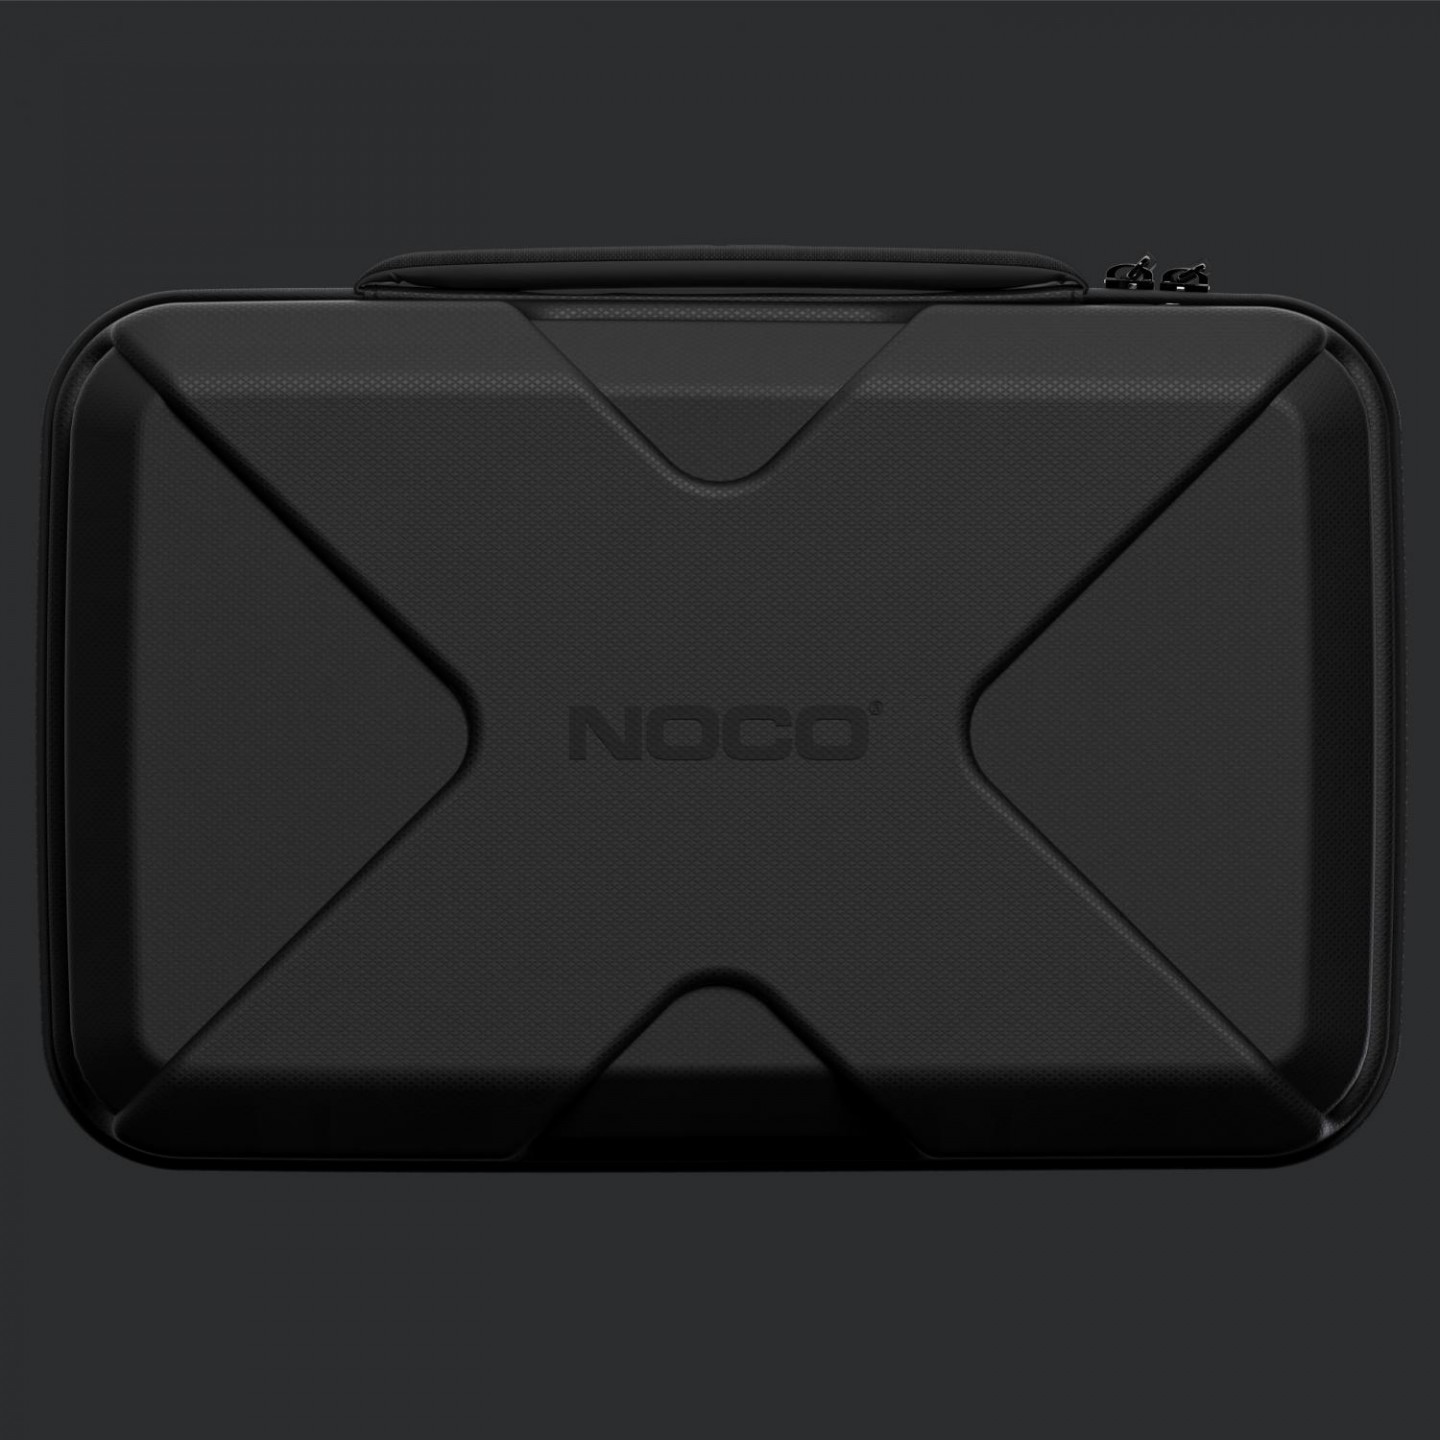 NOCO GBC104 iekārtas GBX155 aizsargsoma